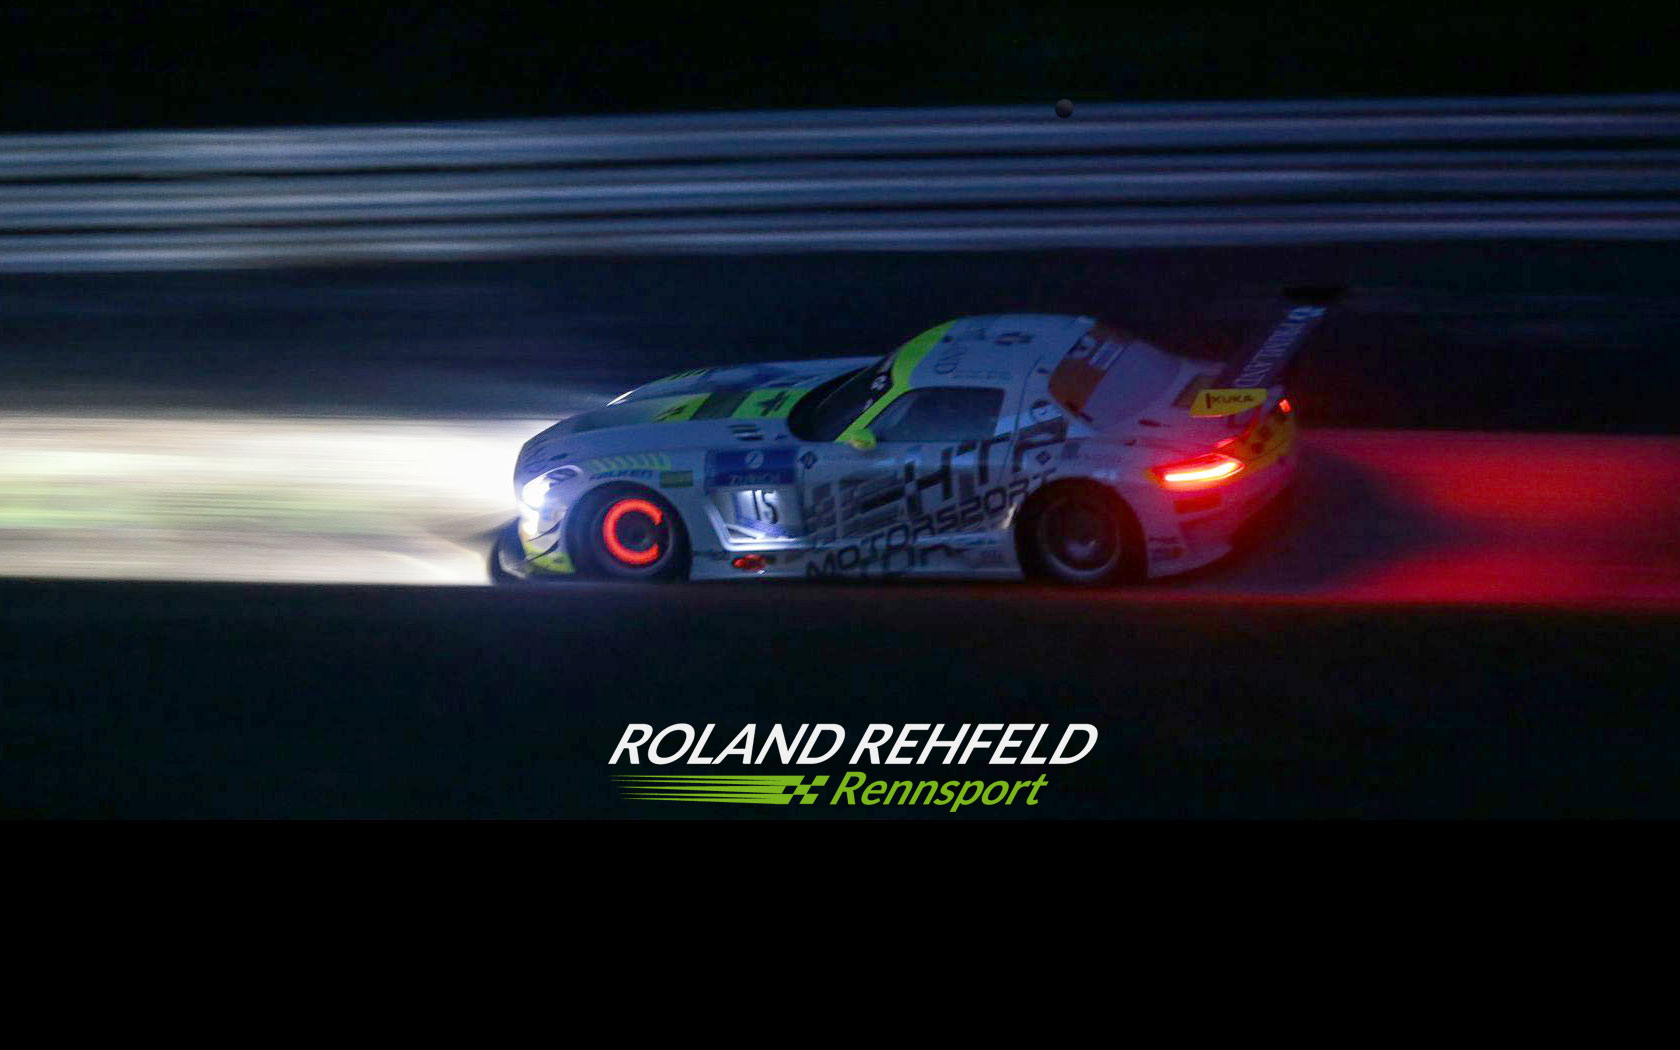 ROLAND REHFELD Rennsport